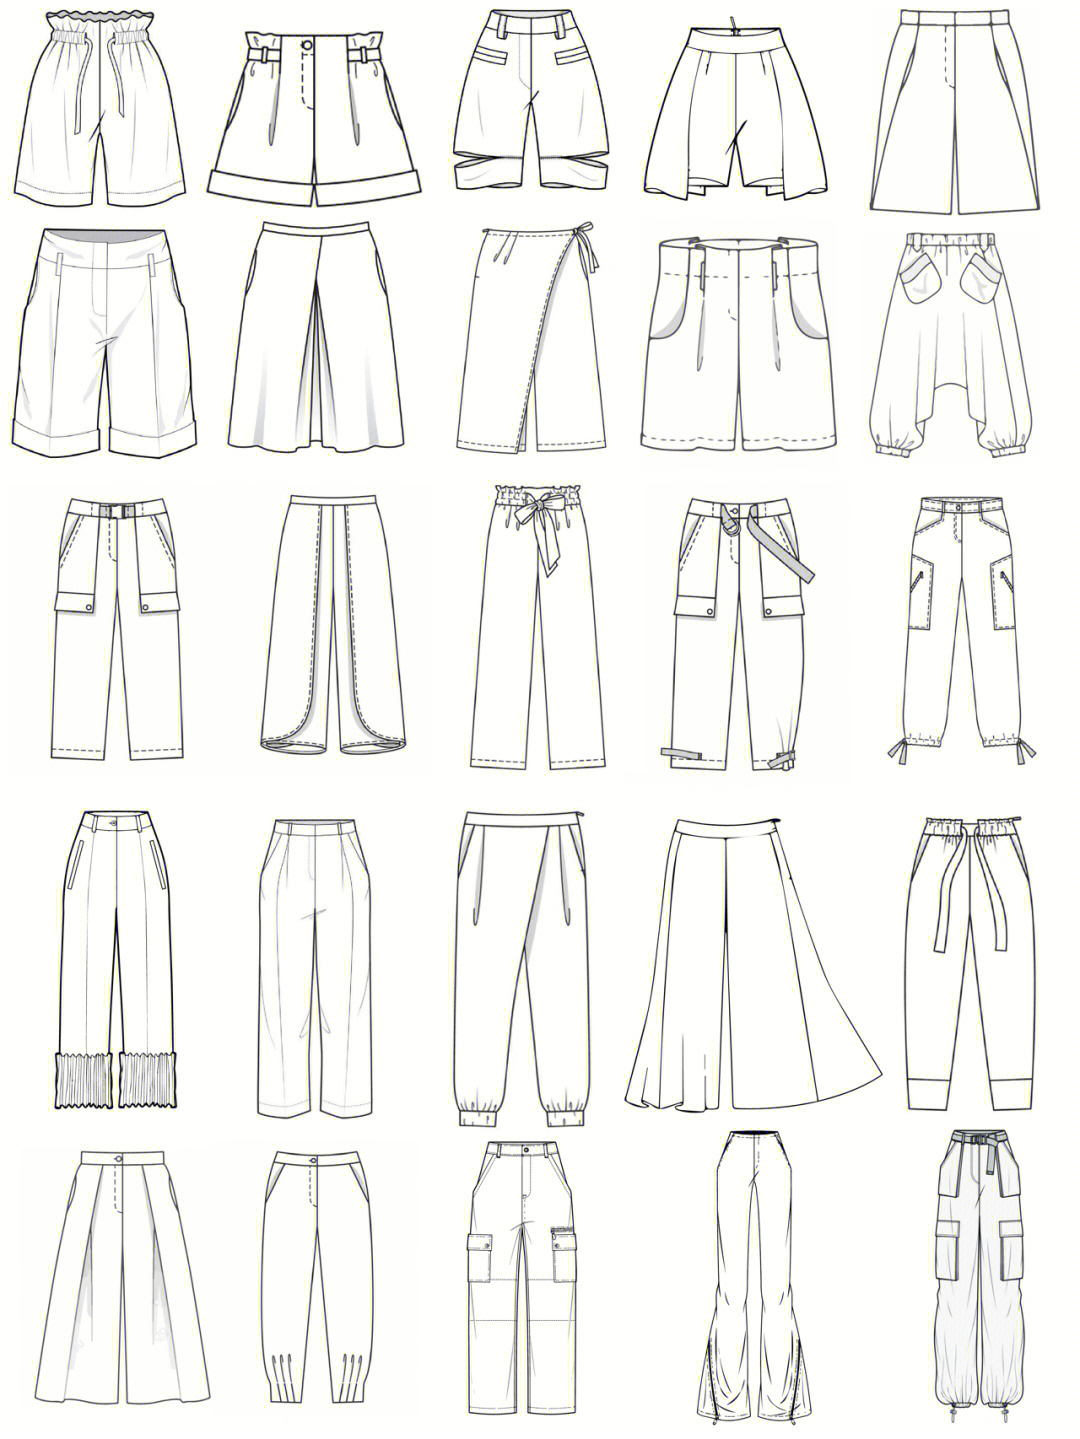 服装设计考研必备素材7825种裤子款式图